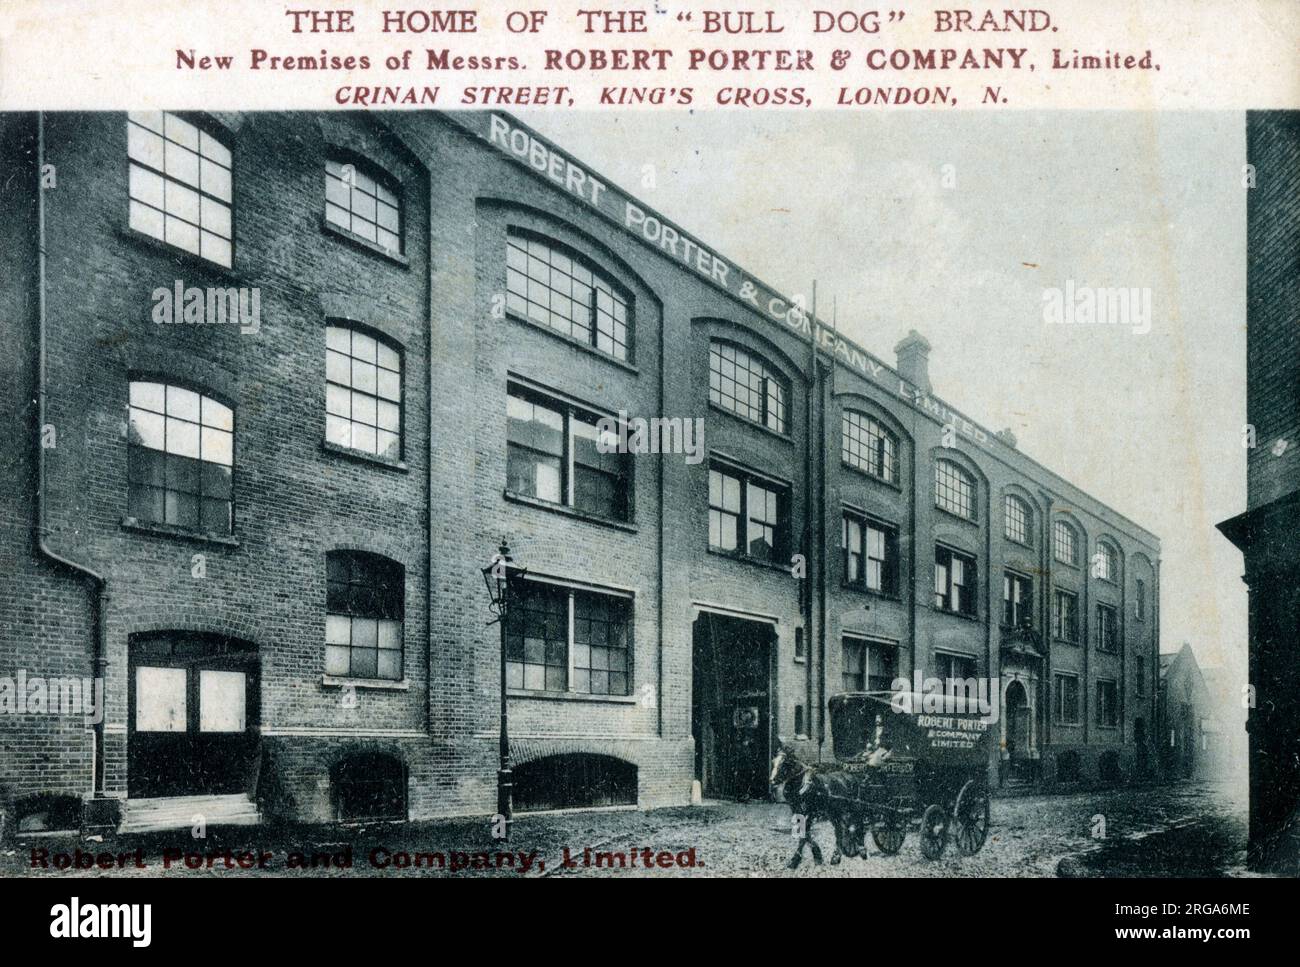 Les nouveaux locaux de MM. Robert porter & Company Ltd. - Crinan Street, King's Cross, Londres. Les brasseurs célèbres pour leur marque Bull Dog. Banque D'Images